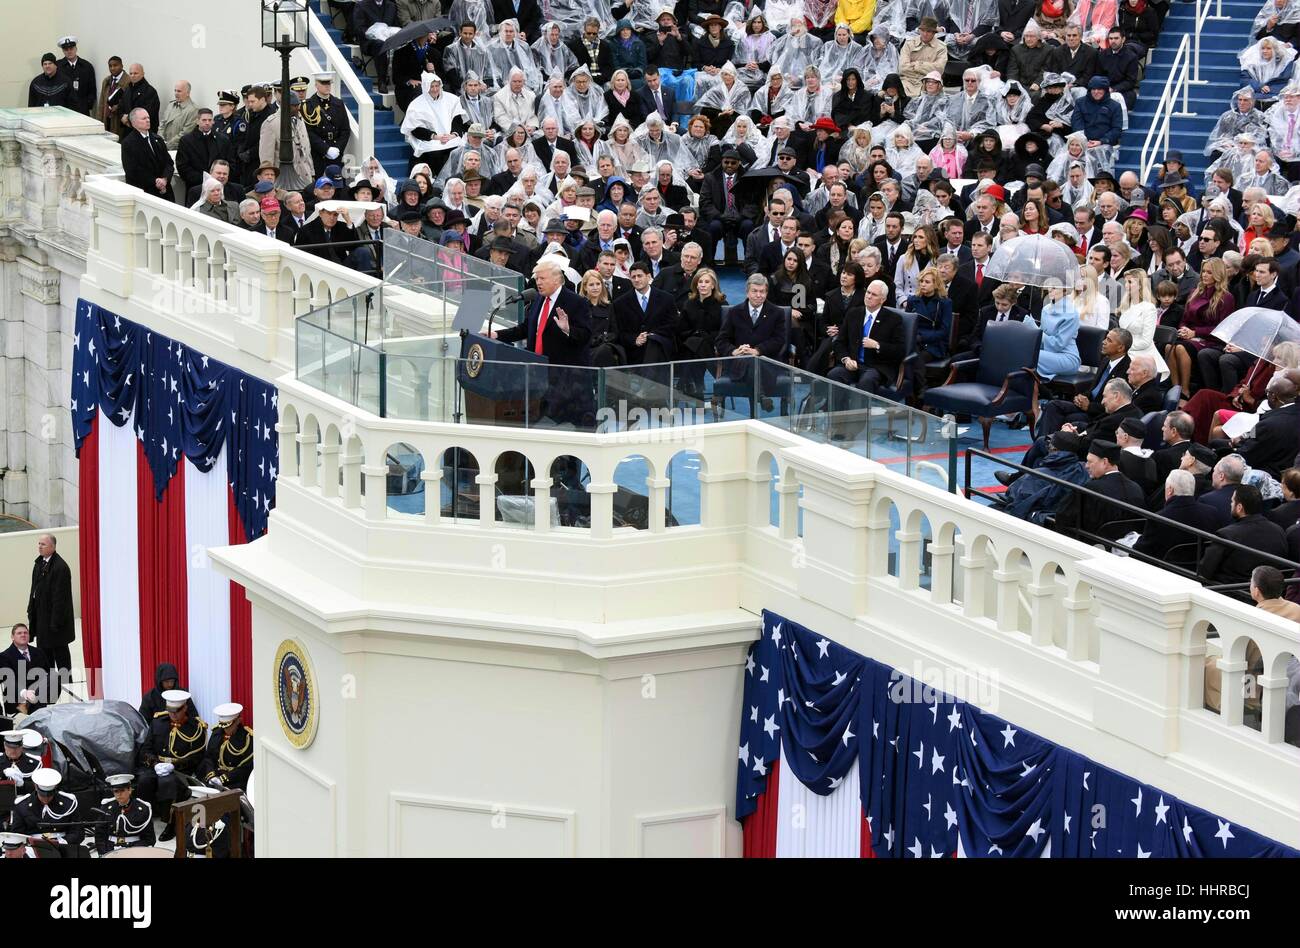 Washington, Estados Unidos. 20 ene, 2017. El Presidente de Estados Unidos, Donald Trump, pronuncia su discurso inaugural después juró como el 45º presidente de los Estados Unidos durante la ceremonia de toma de mando presidencial en el Capitolio de EE.UU. Crédito: Bogu Yin/Xinhua/Alamy Live News Foto de stock